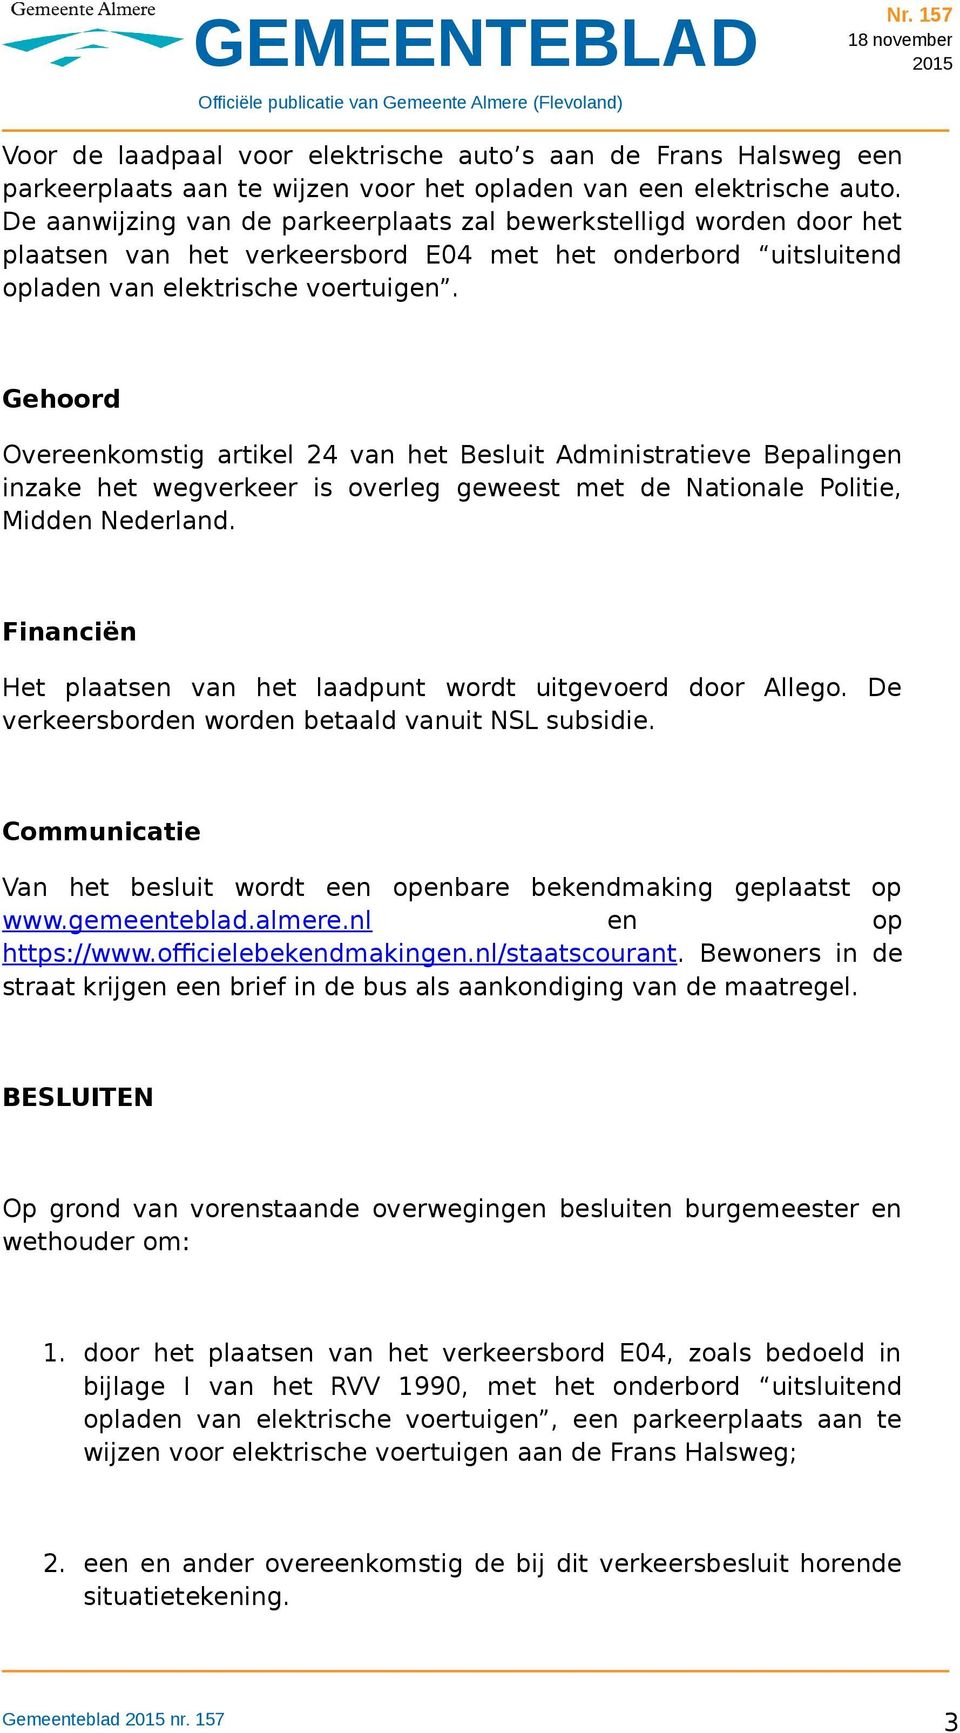 Gehoord Overeenkomstig artikel 24 van het Besluit Administratieve Bepalingen inzake het wegverkeer is overleg geweest met de Nationale Politie, Midden Nederland.